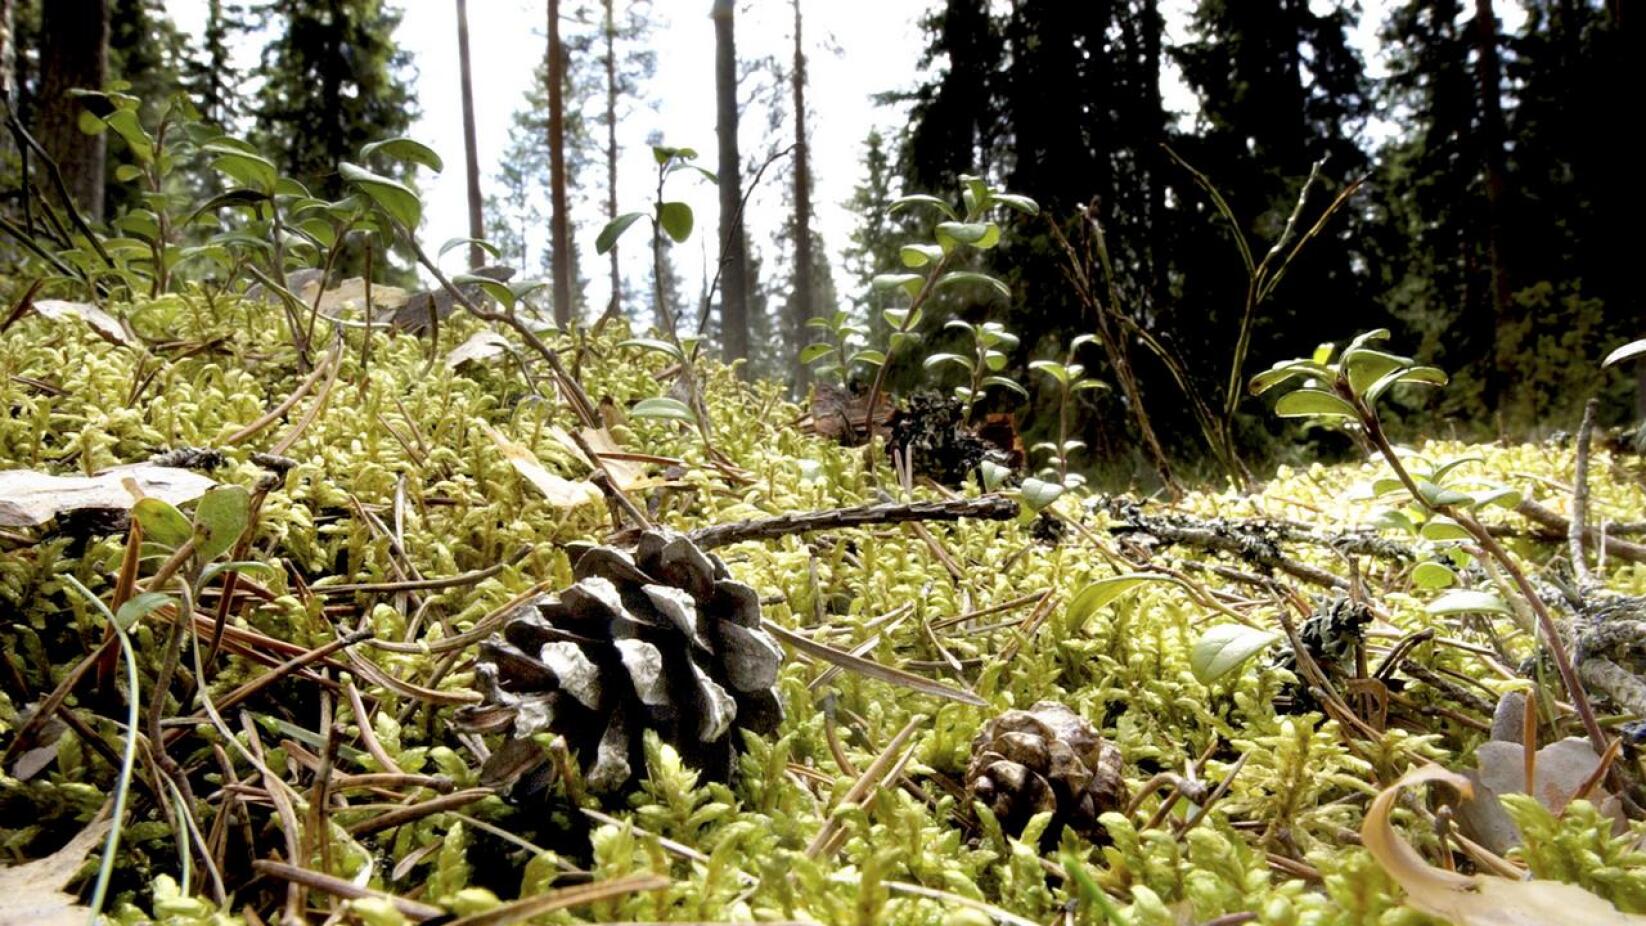 Suomen metsäkeskus järjestää toimintojaan uudelleen ja käynnistää yt-neuvottelut. Työvoiman vähentämisellä haetaan 900 000 euron eli noin 15 henkilötyövuoden säästöjä.